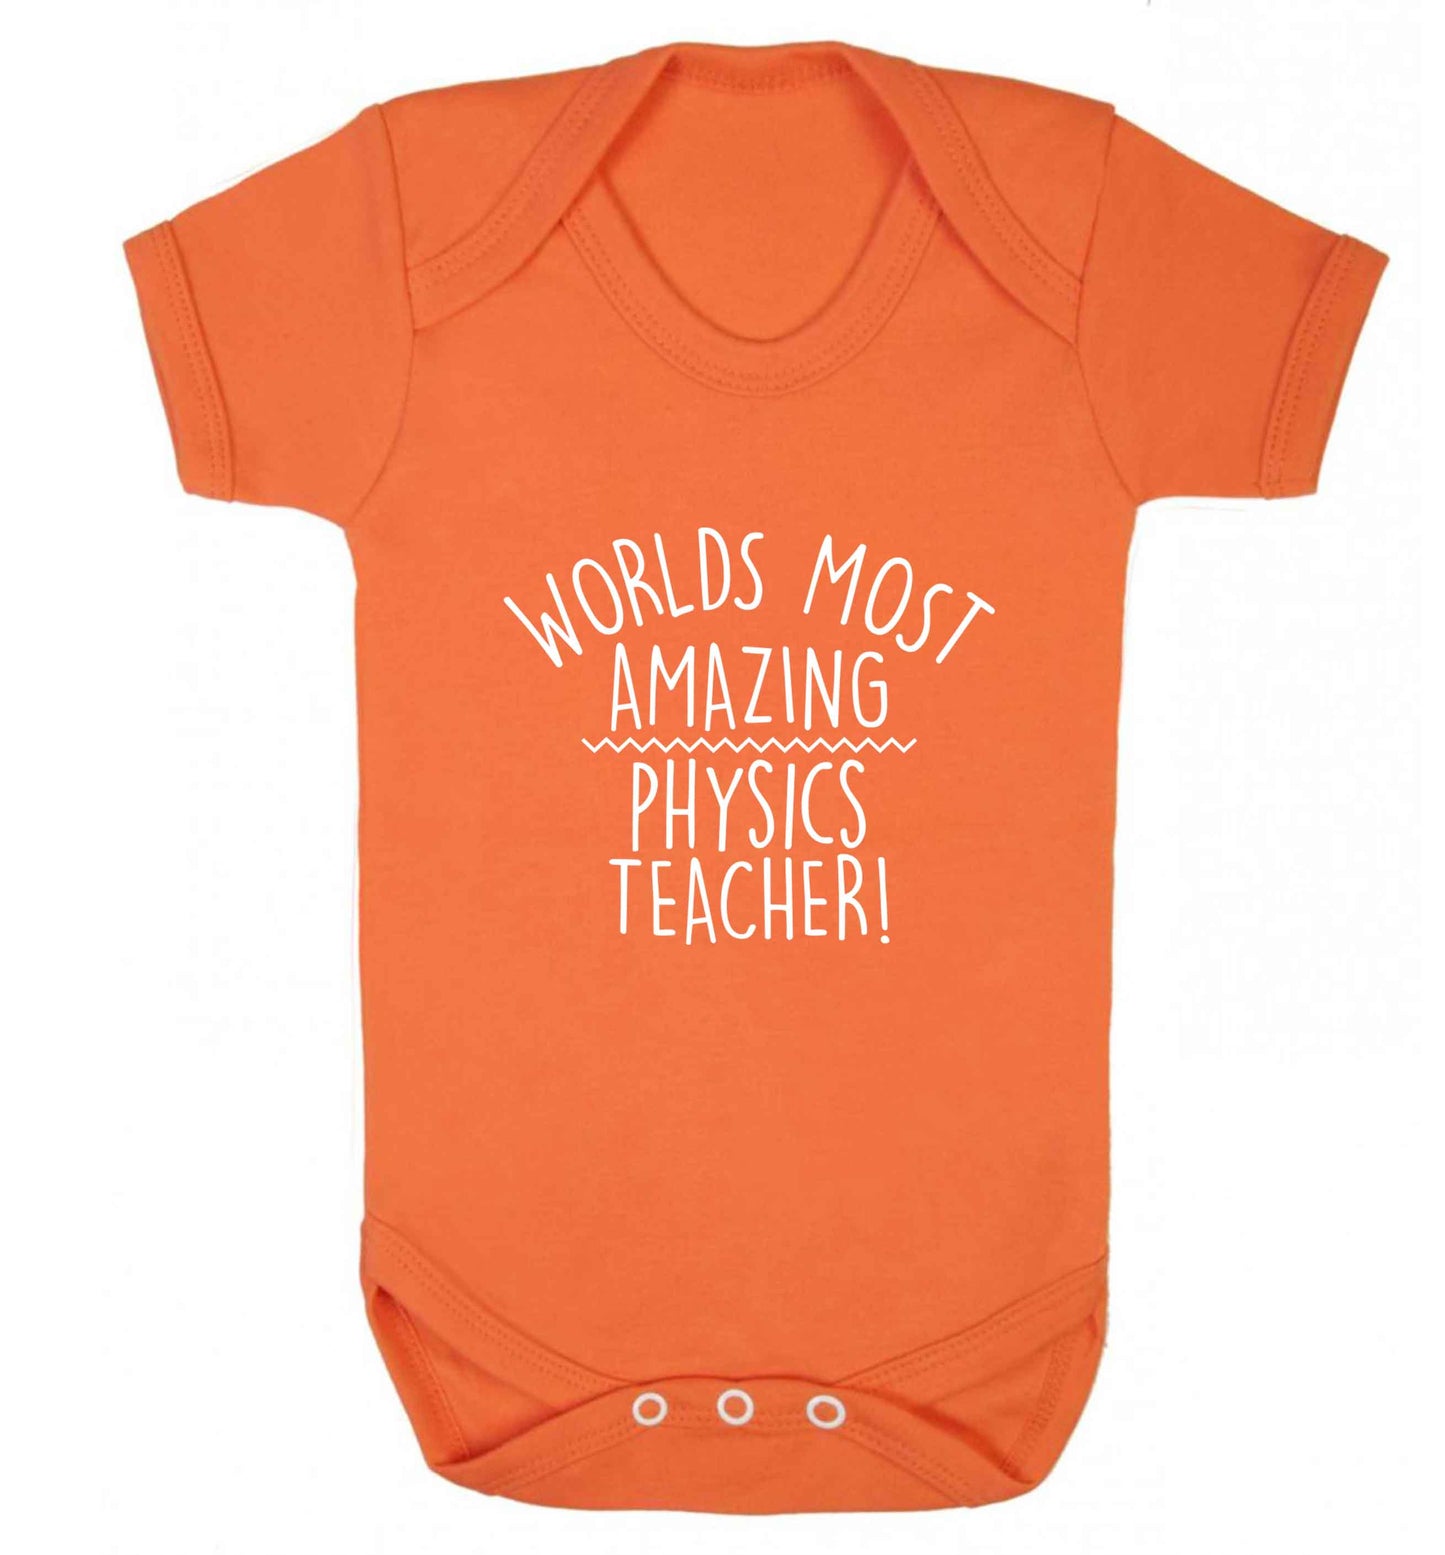 Worlds most amazing physics teacher baby vest orange 18-24 months